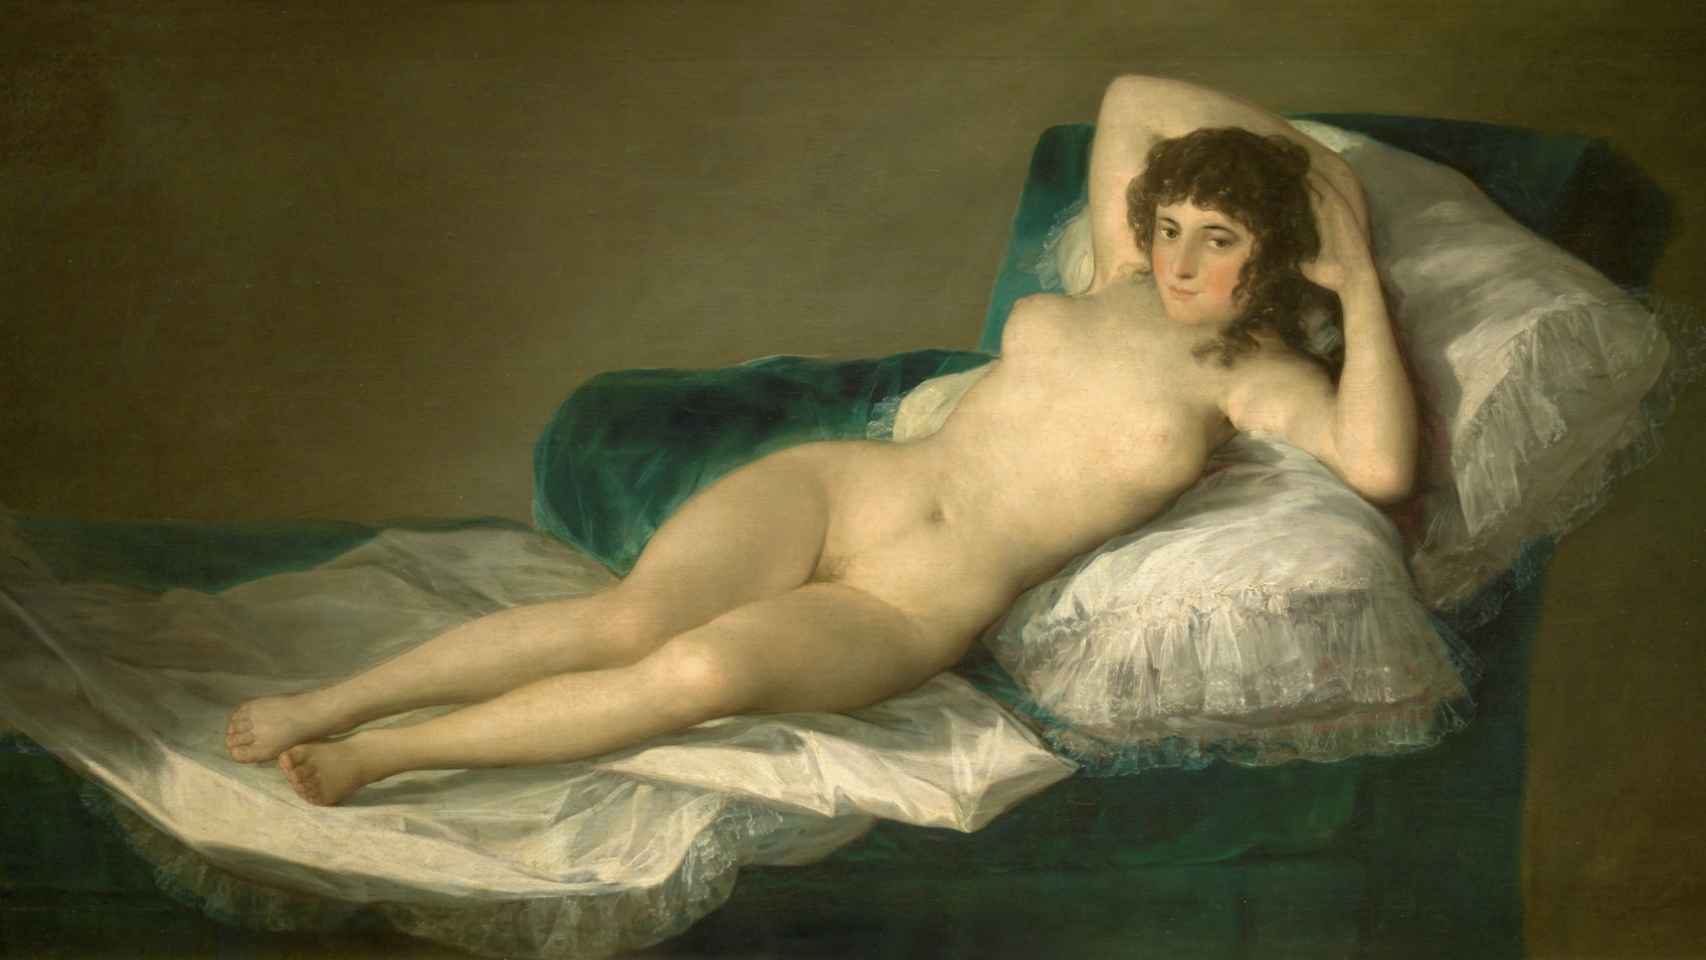 200 años Museo del Prado De Las meninas a La maja desnuda el género del retrato en los 200 mejores cuadros del Prado (III) imagen